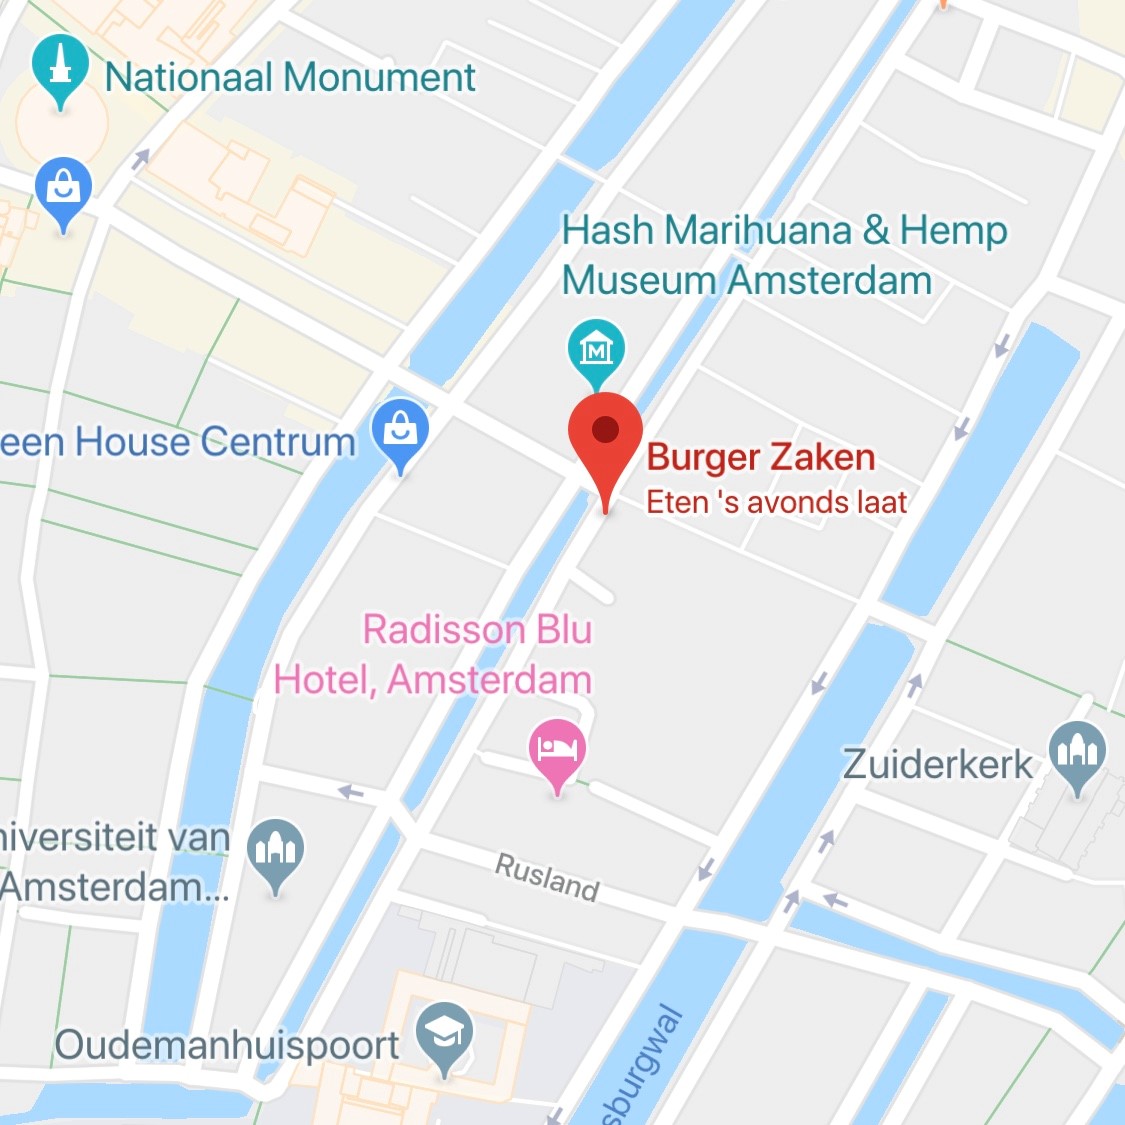 Burger Zaken – Amsterdam's finest burgers